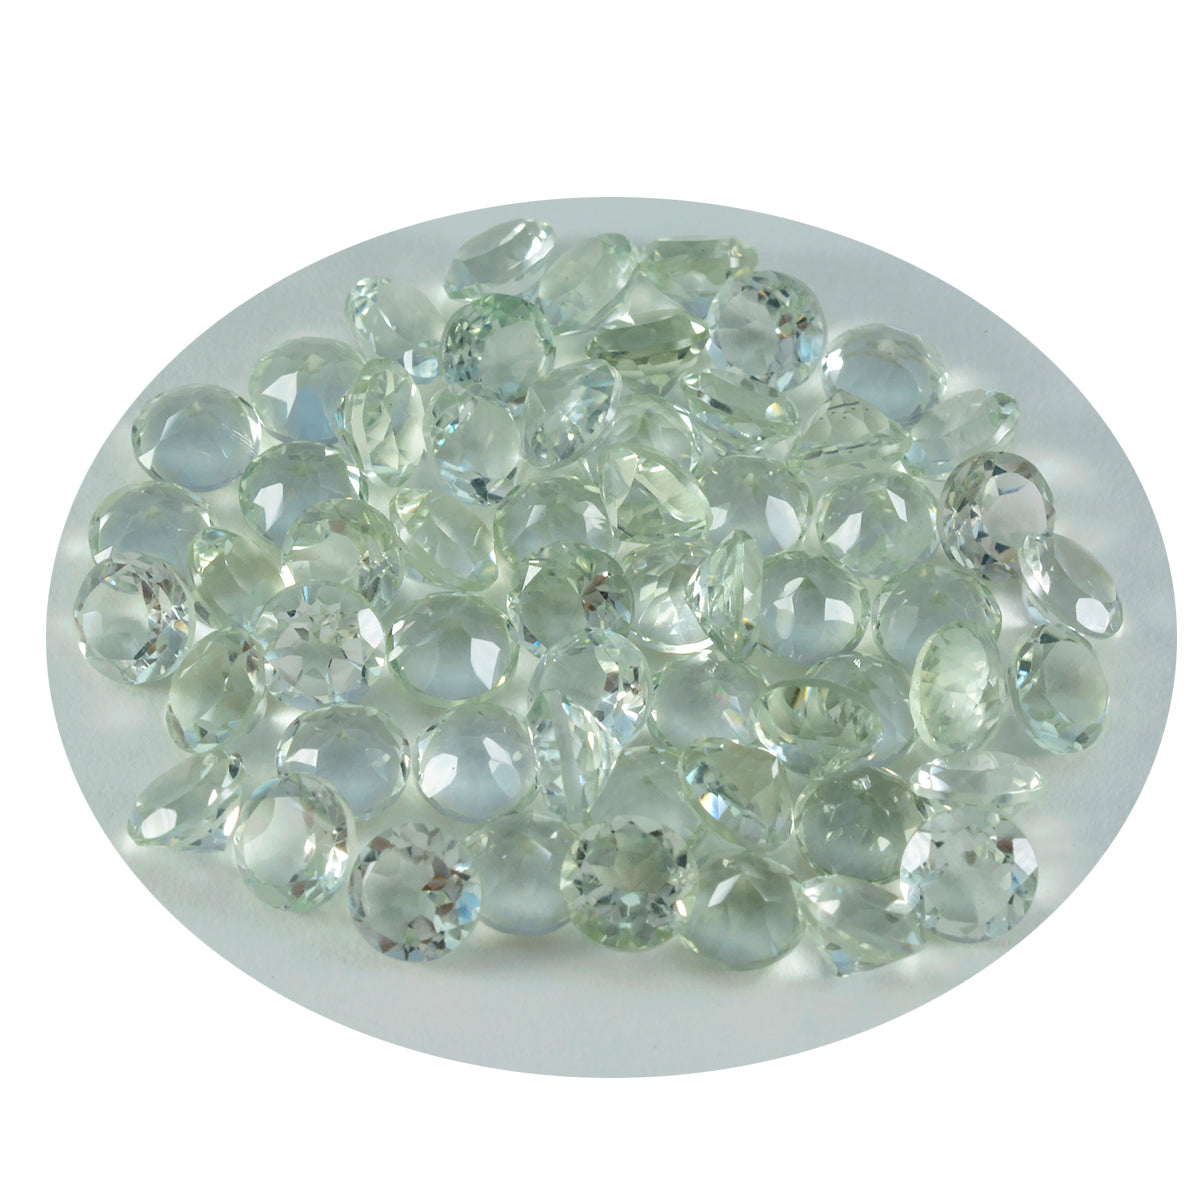 riyogems 1шт зеленый аметист ограненный 4х4 мм круглая форма красивый качественный свободный драгоценный камень